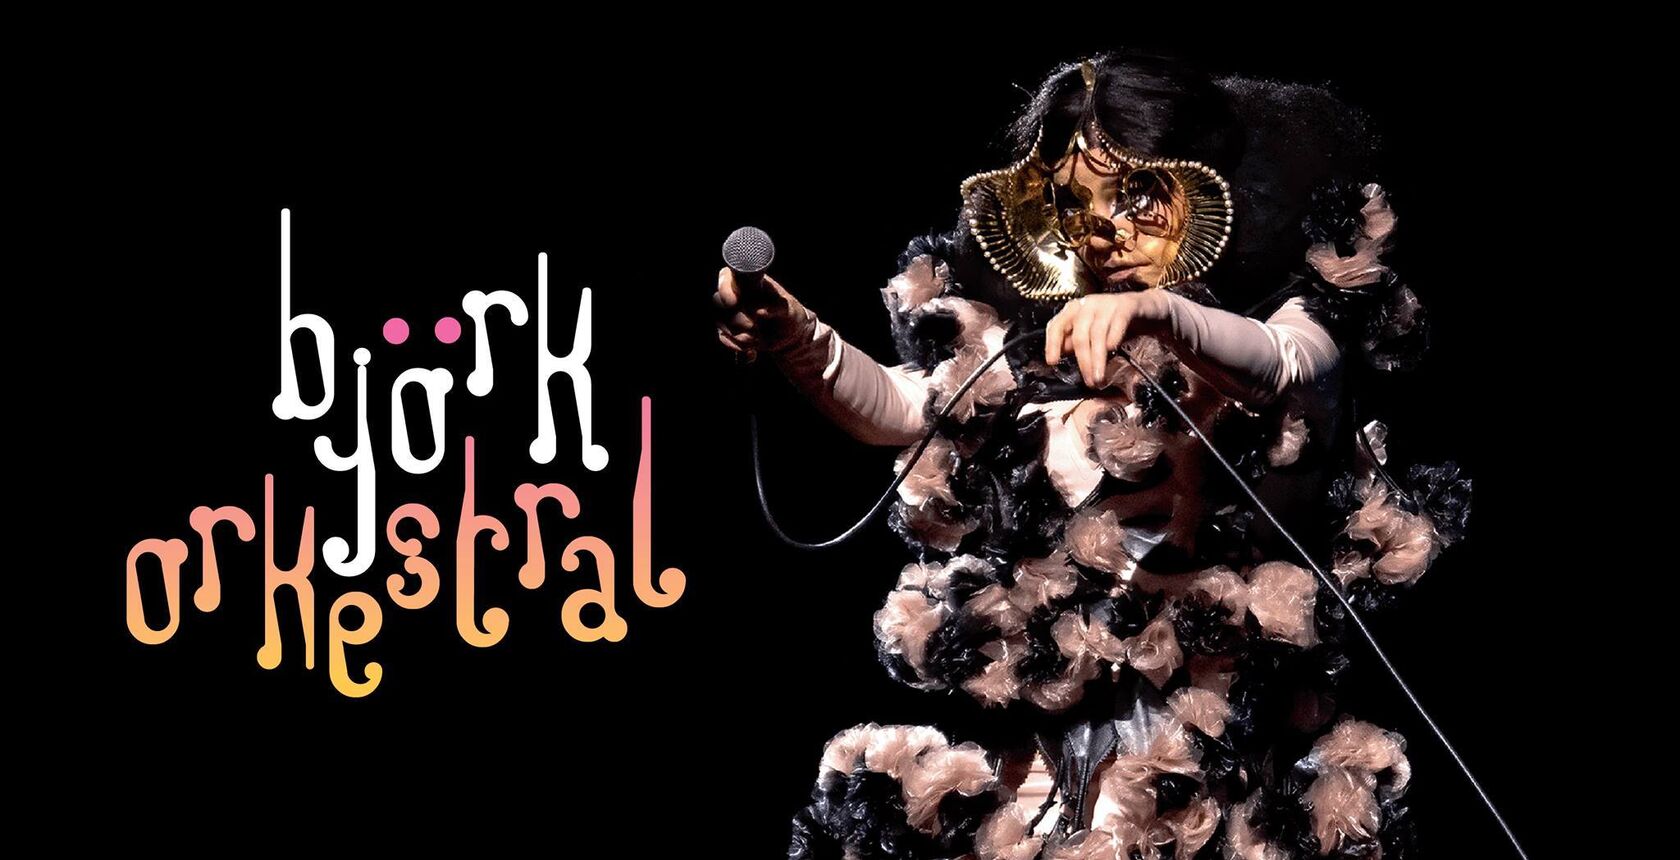 Björk Orkestral Live from Reykjavík Concerts & Tickets Iceland